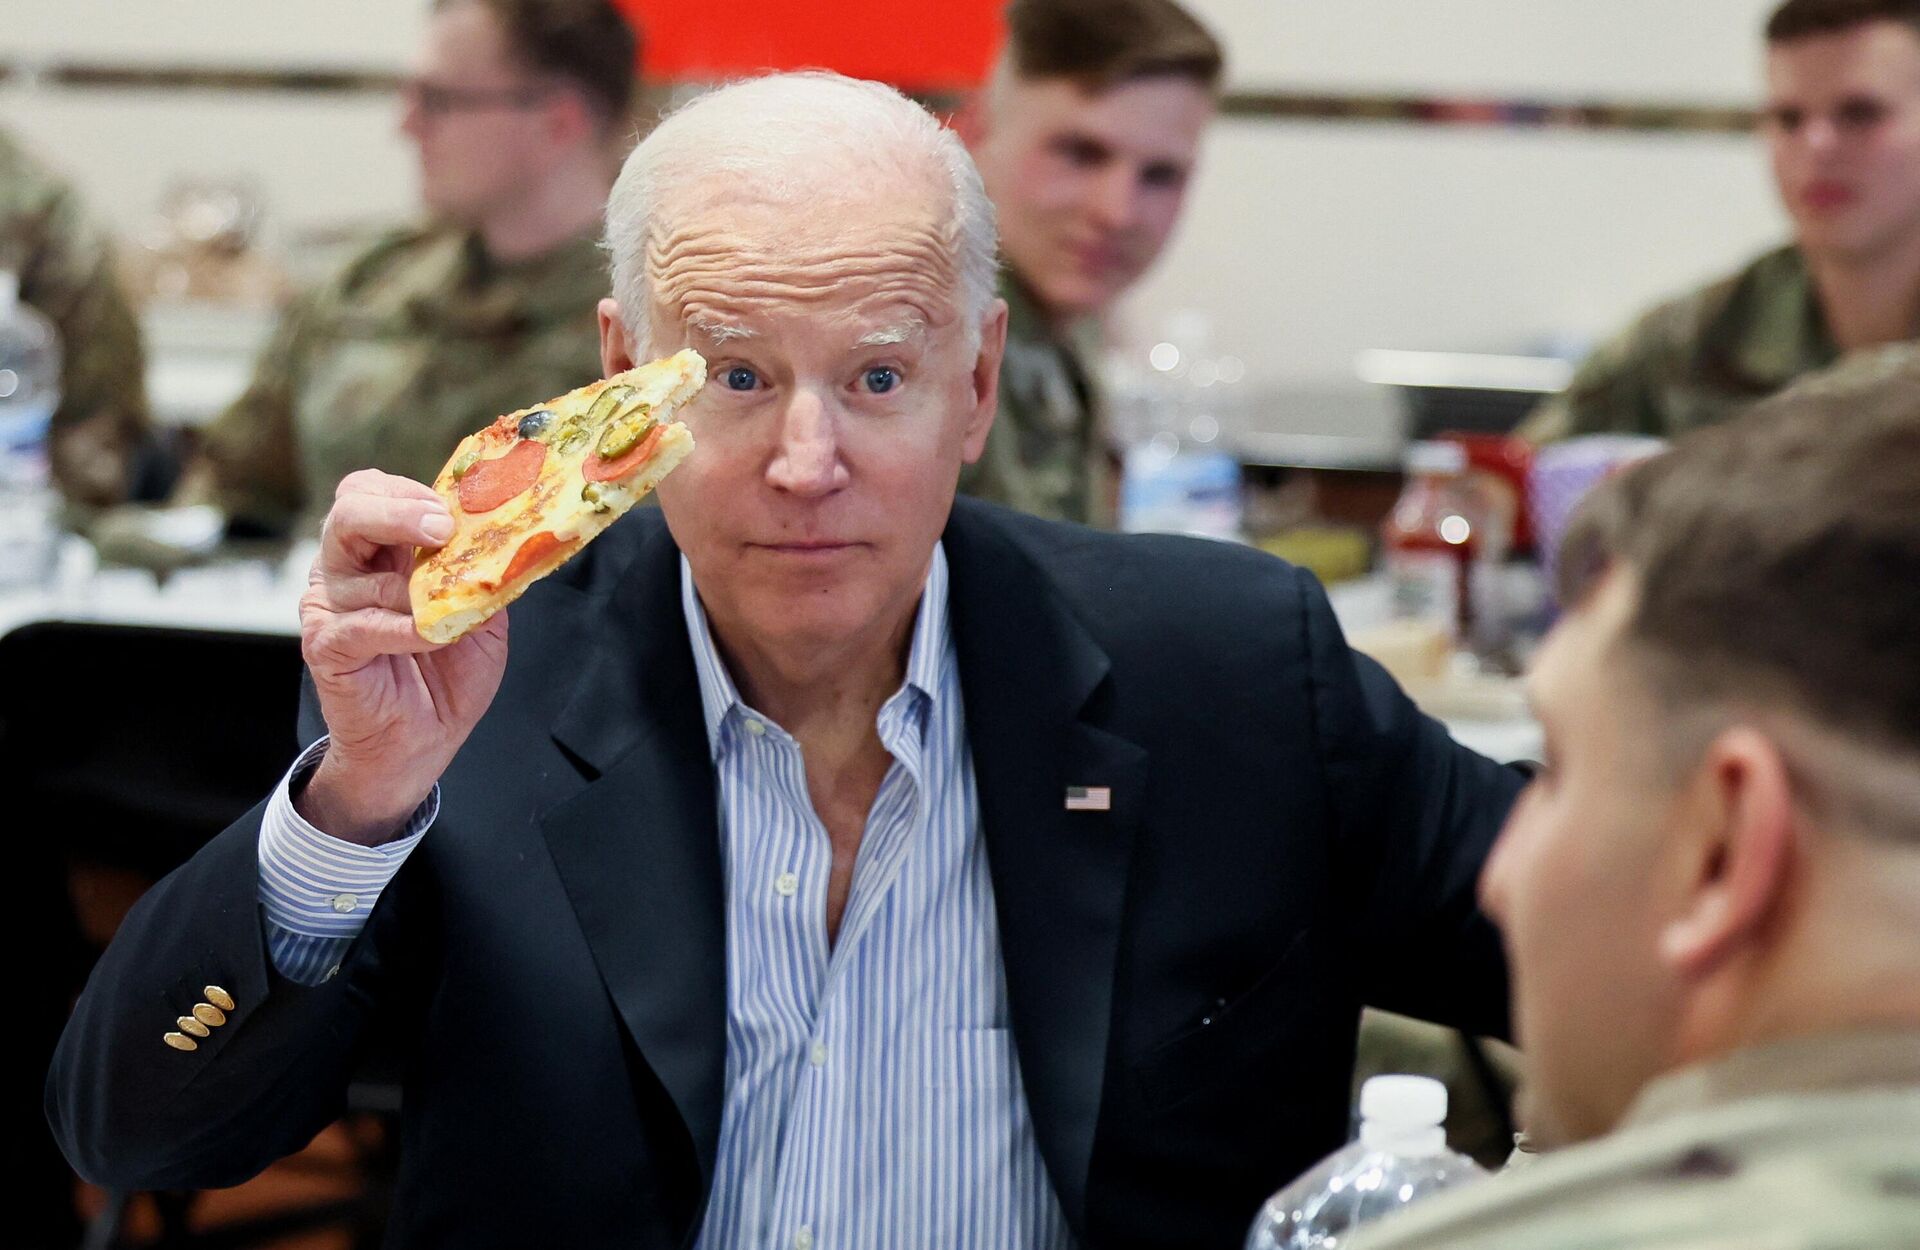 El presidente de EEUU, Joe Biden, come la pizza mientras esperando reunirse con su homólogo polaco, Andrzej Duda - Sputnik Mundo, 1920, 25.03.2022